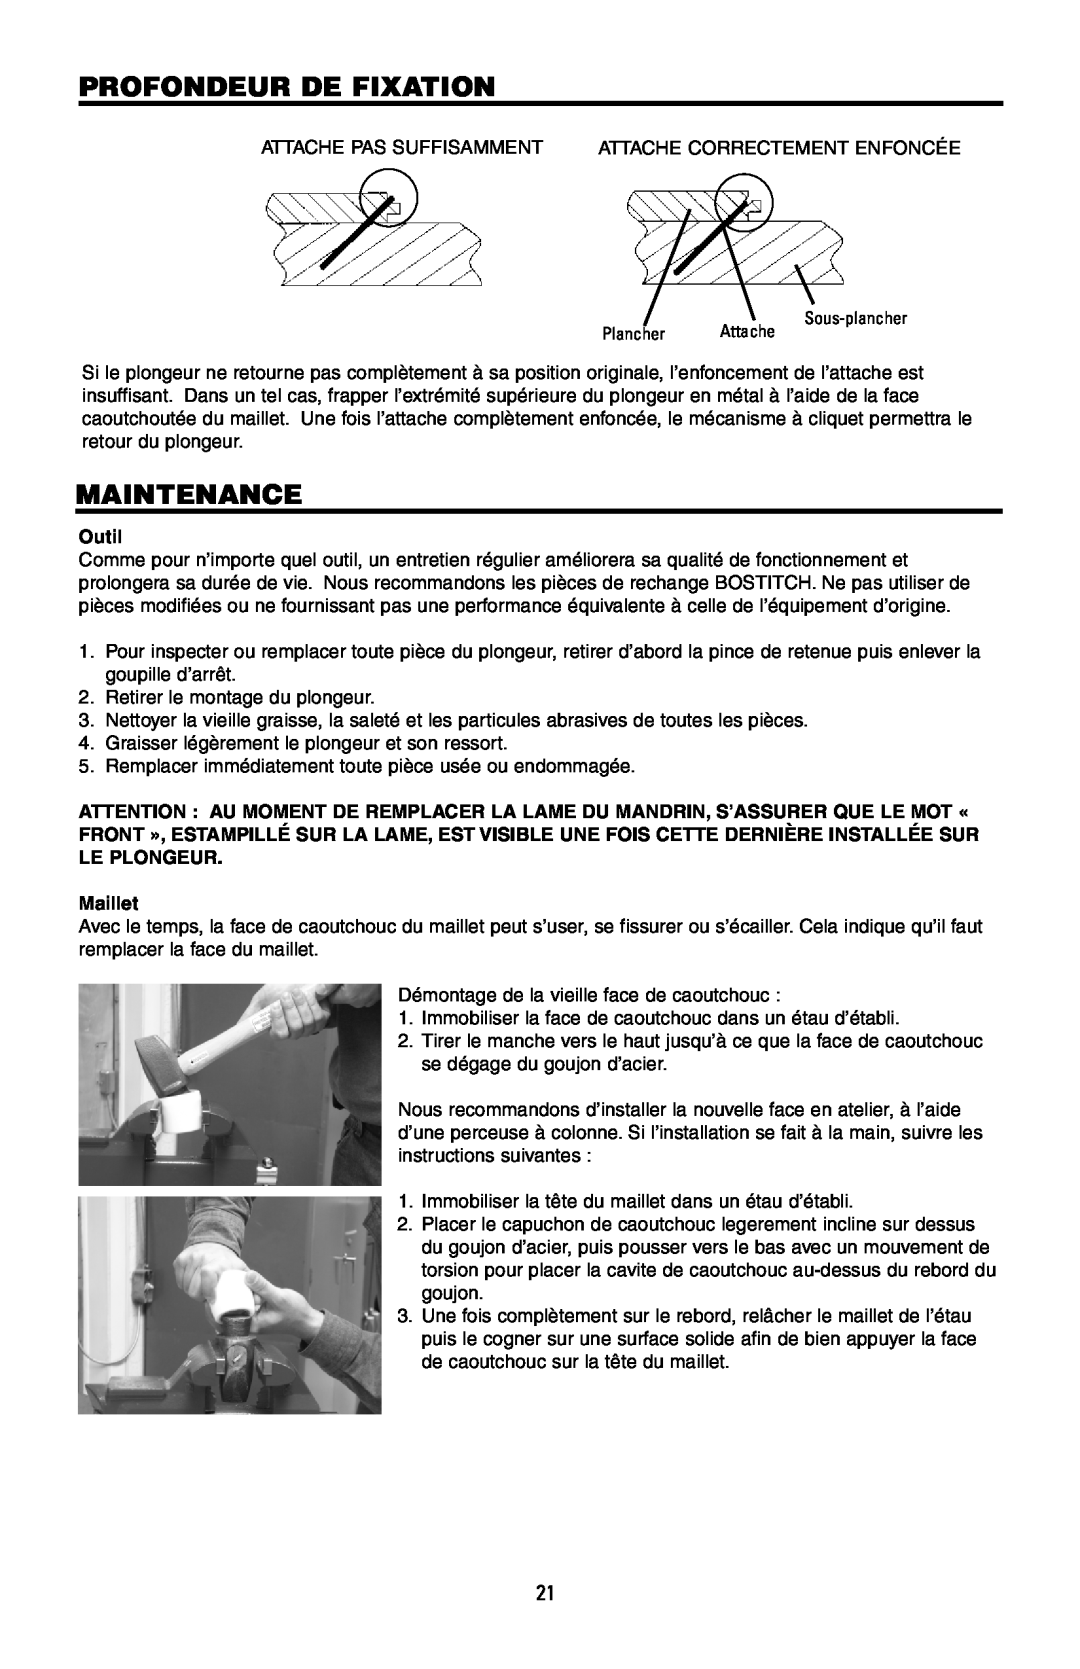 Intec MFN-200 manual Profondeur De Fixation, Maintenance, Outil, Maillet 